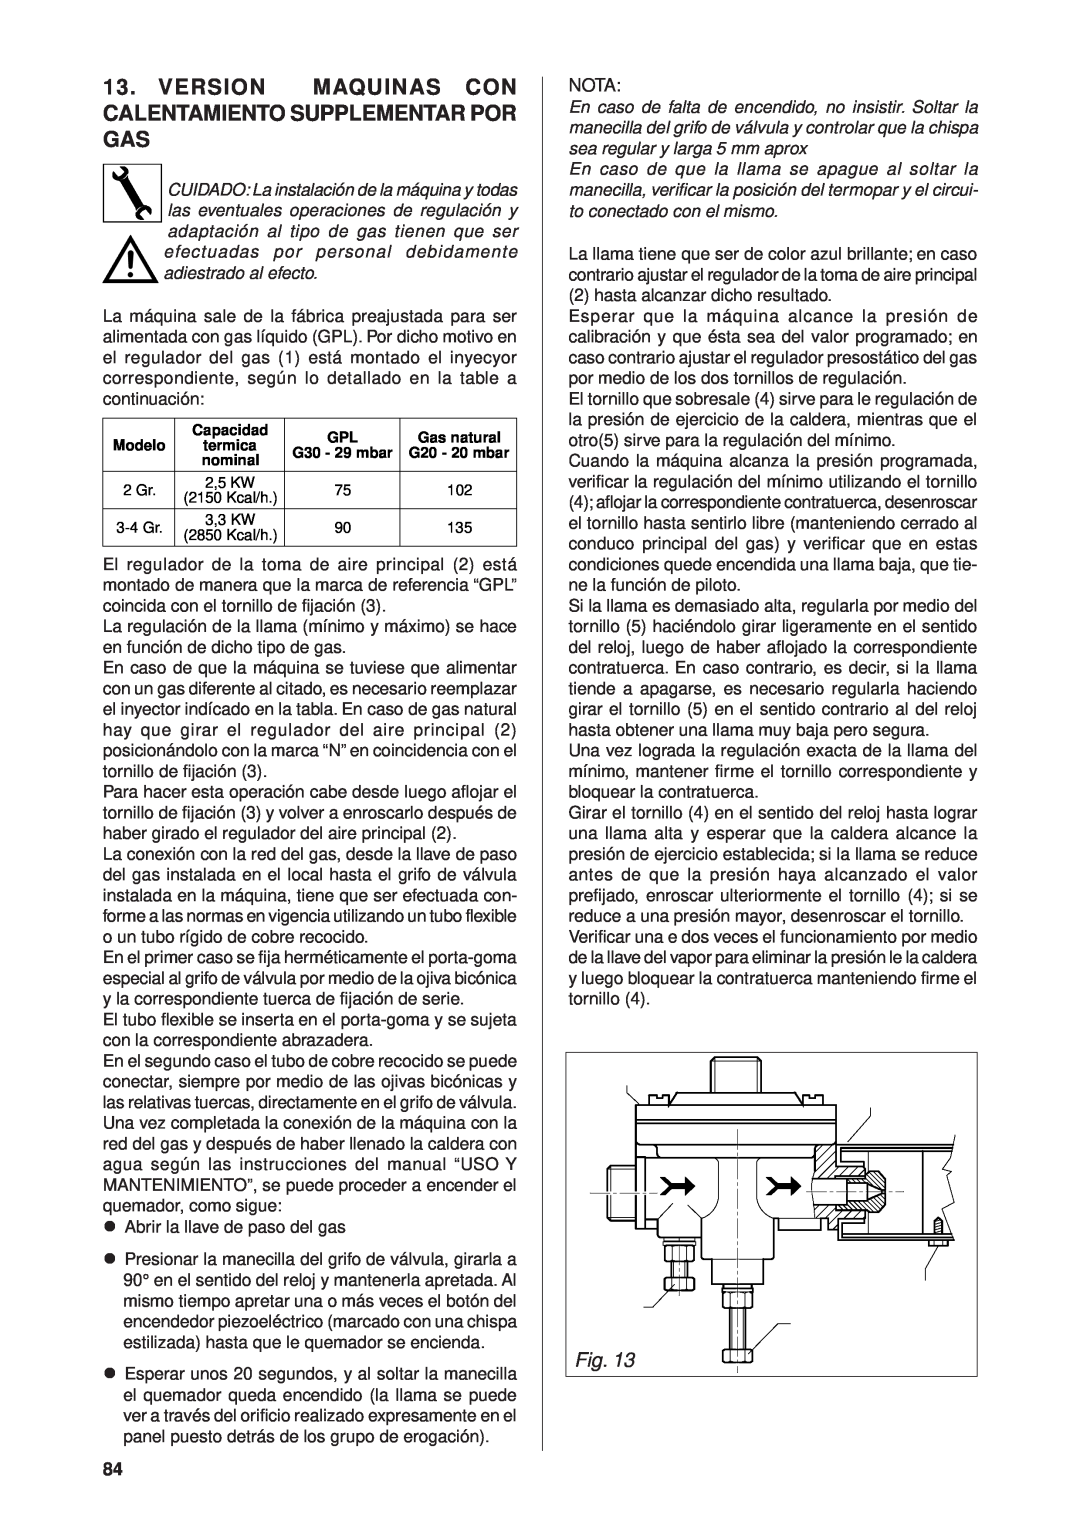 Rancilio Millennium manual Version Maquinas Con Calentamiento Supplementar Por Gas 